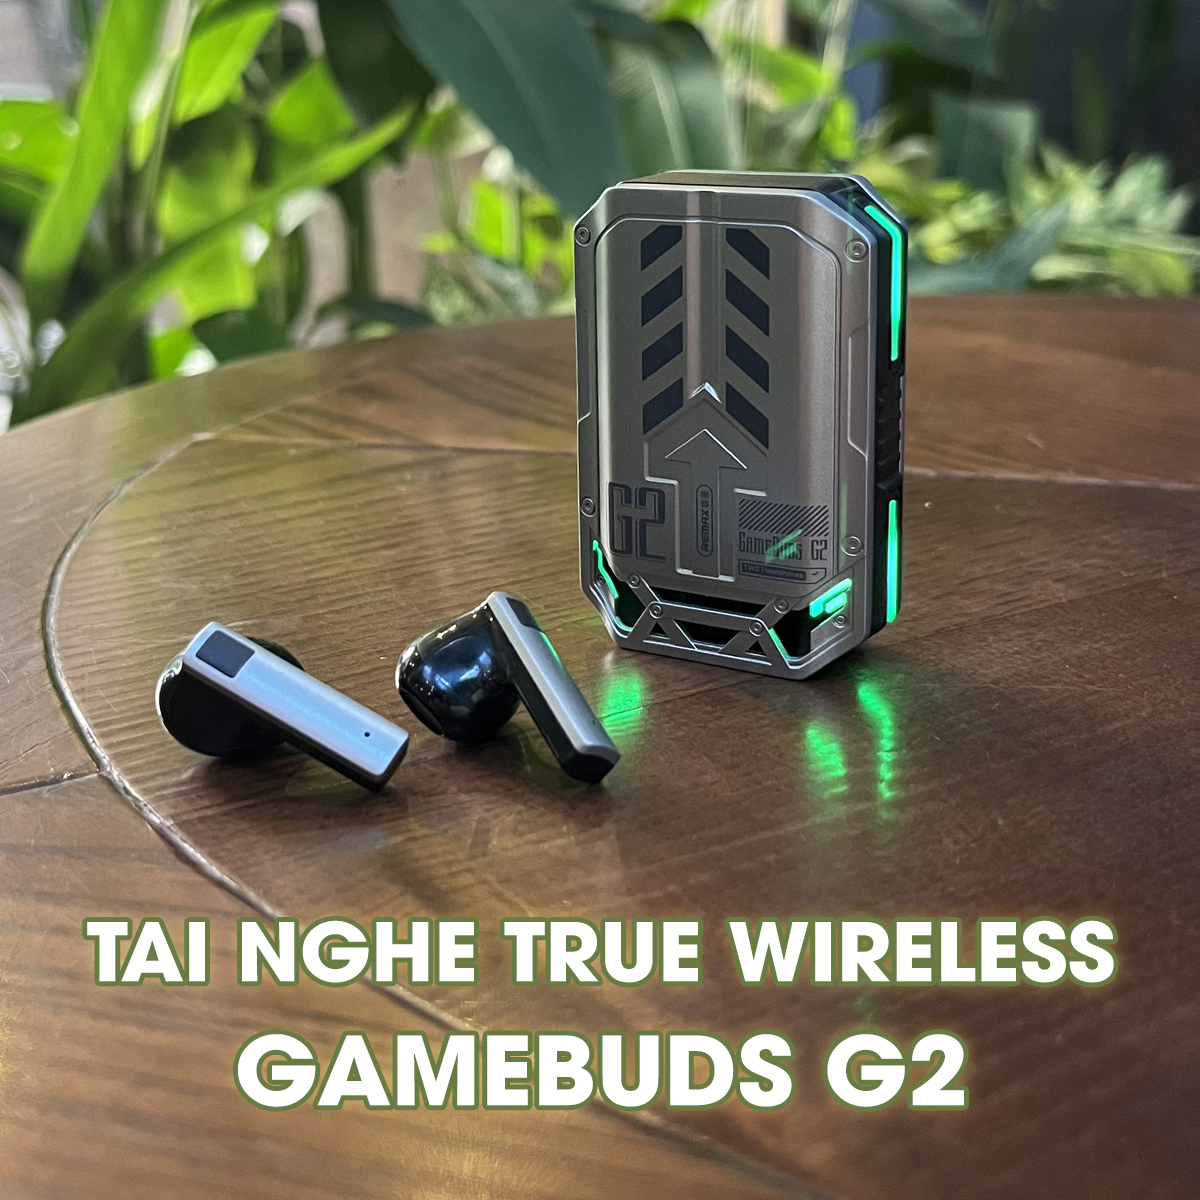 Tai Nghe Gaming Bluetooth True Wireless Remax GameBuds G2 Không Độ Trễ Khi Chơi Game - Hàng Chính Hãng Remax